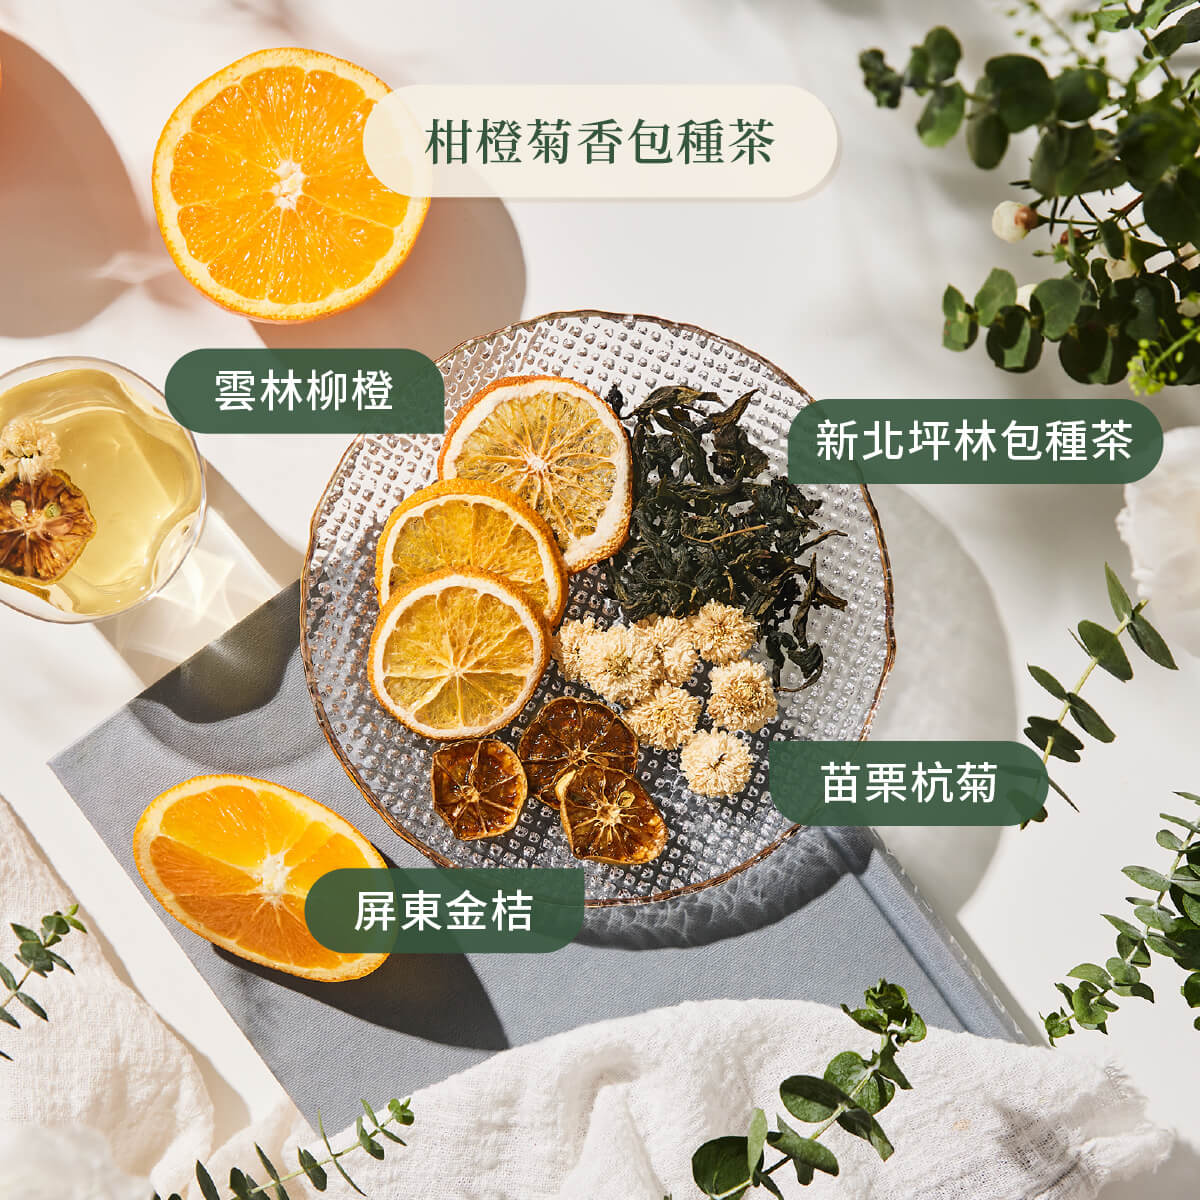 柑橙菊香包種茶原料圖示